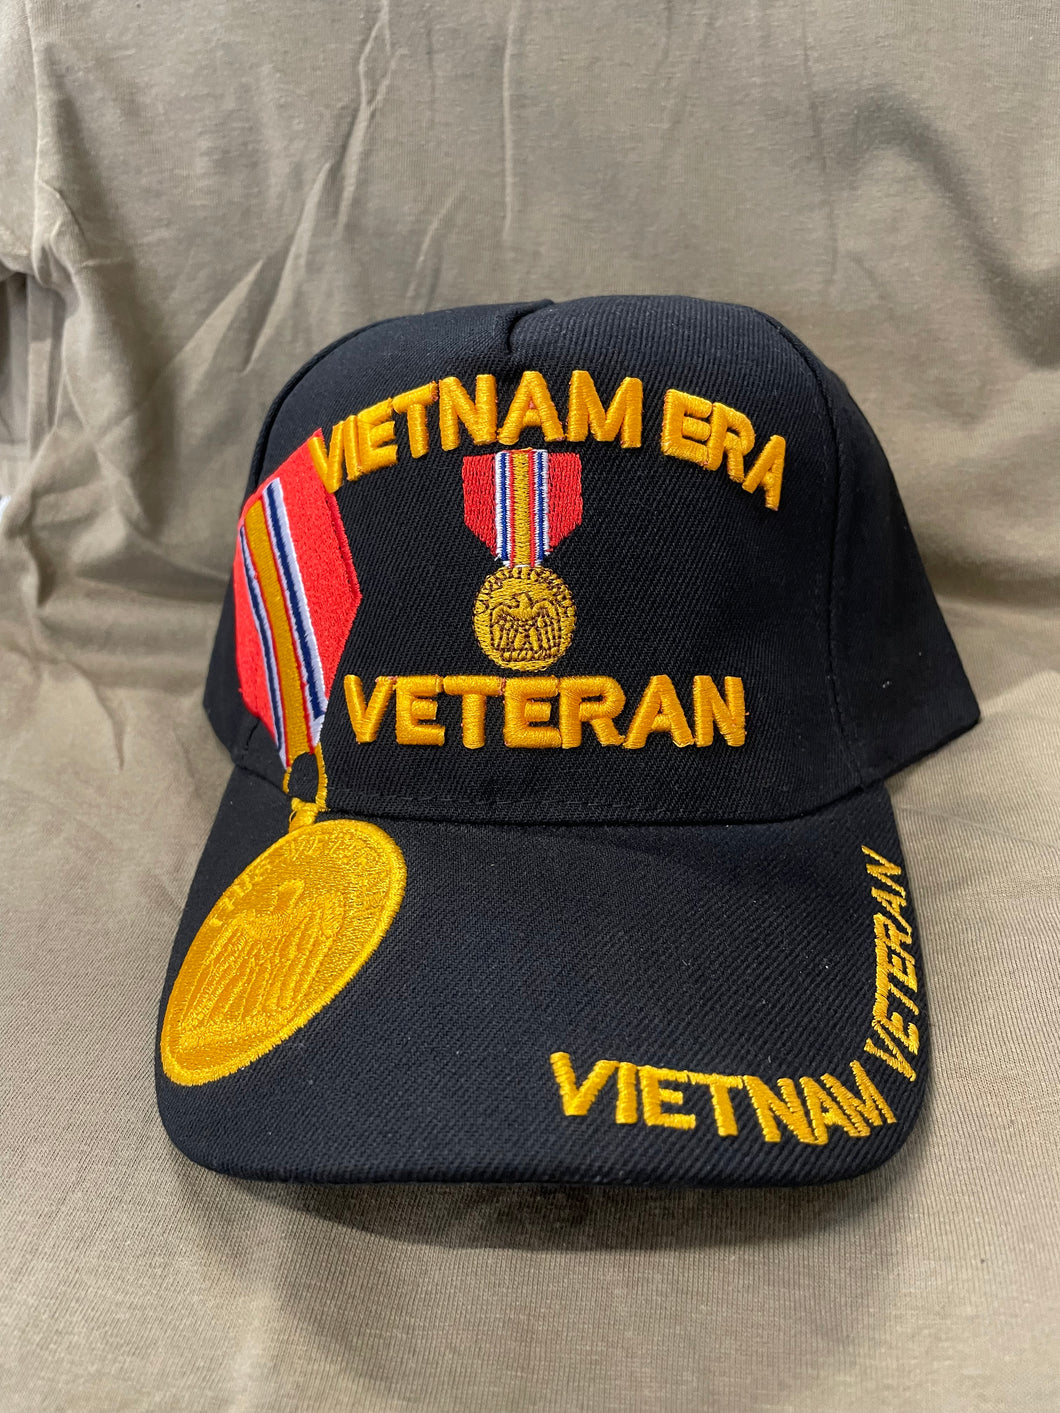 FRONT VIEW OF VIETNAM ERA HAT